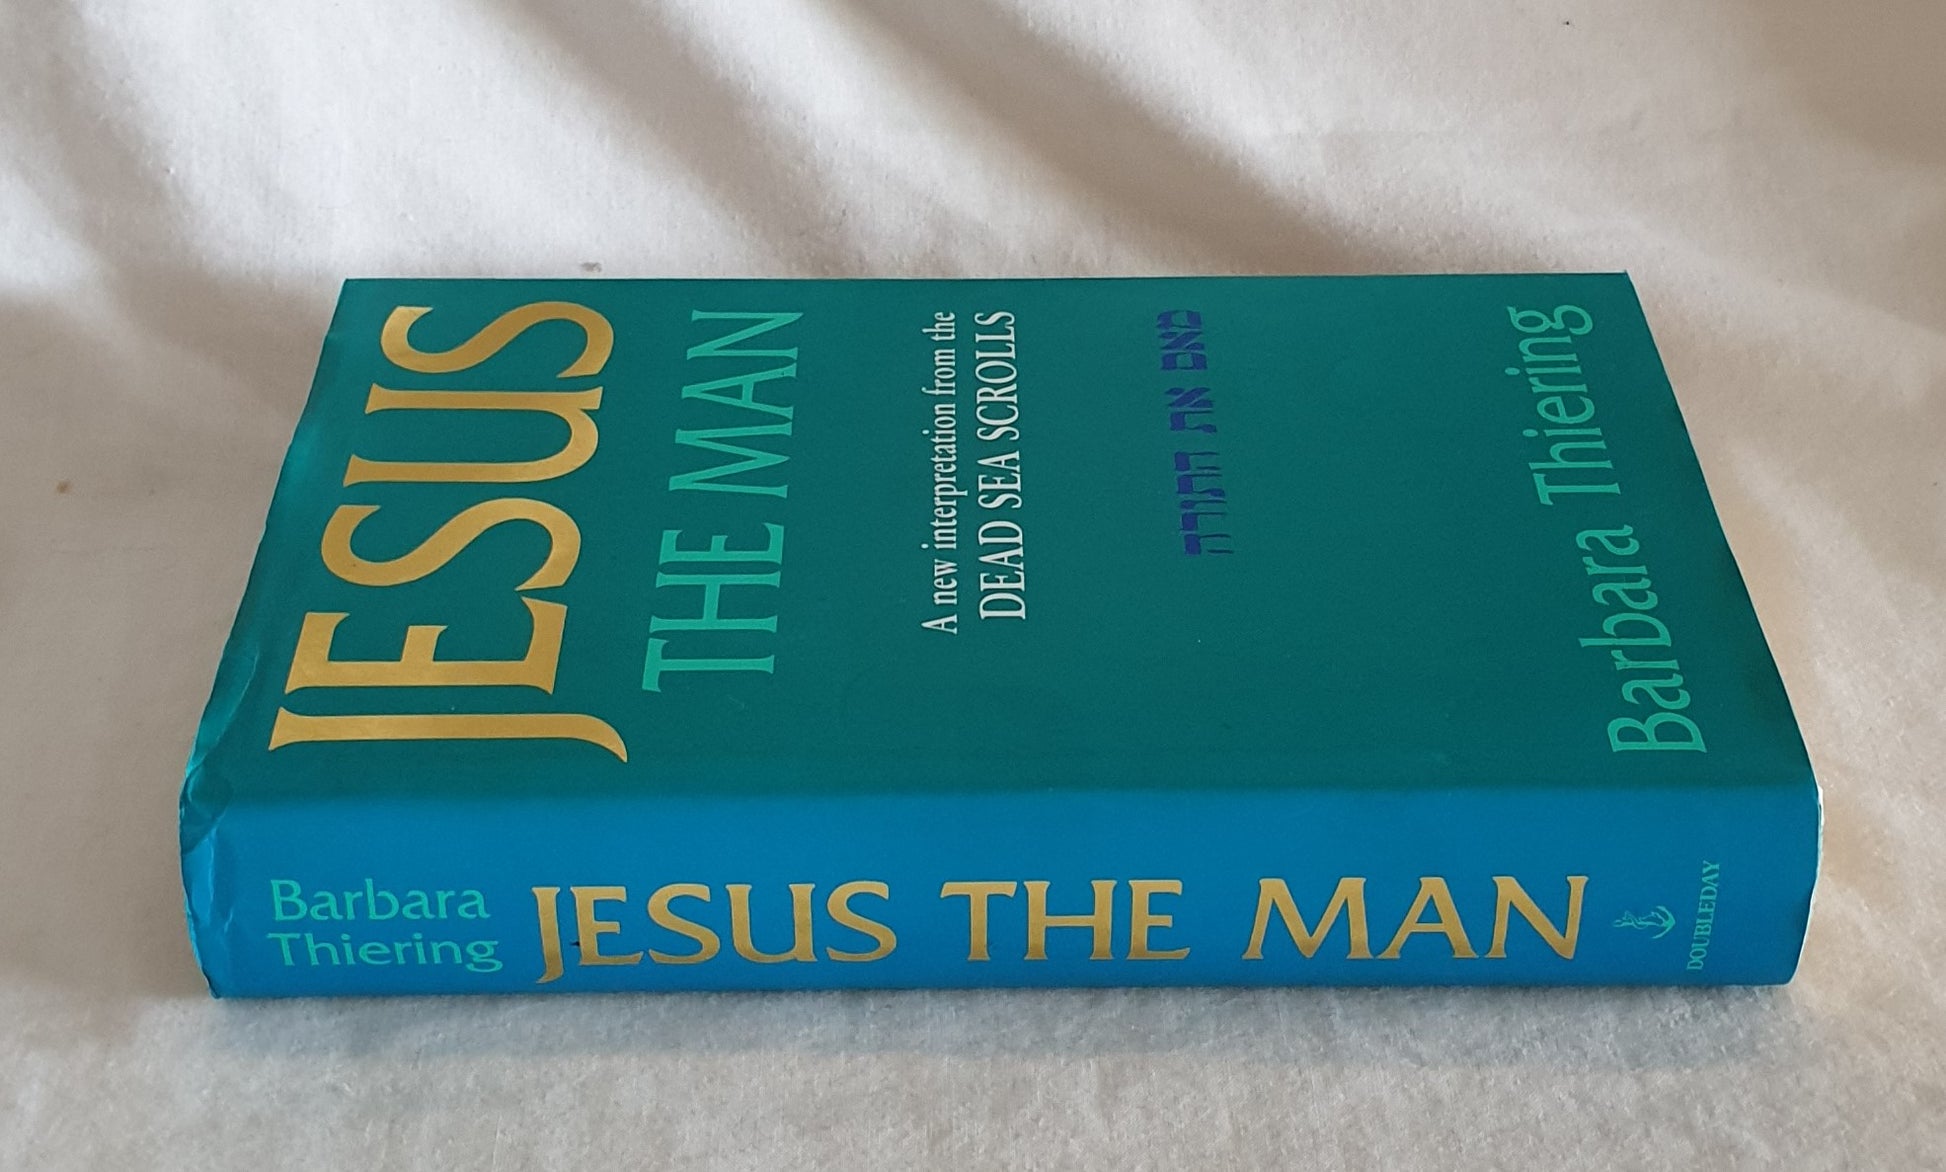 Jesus the Man by Barbara Thiering